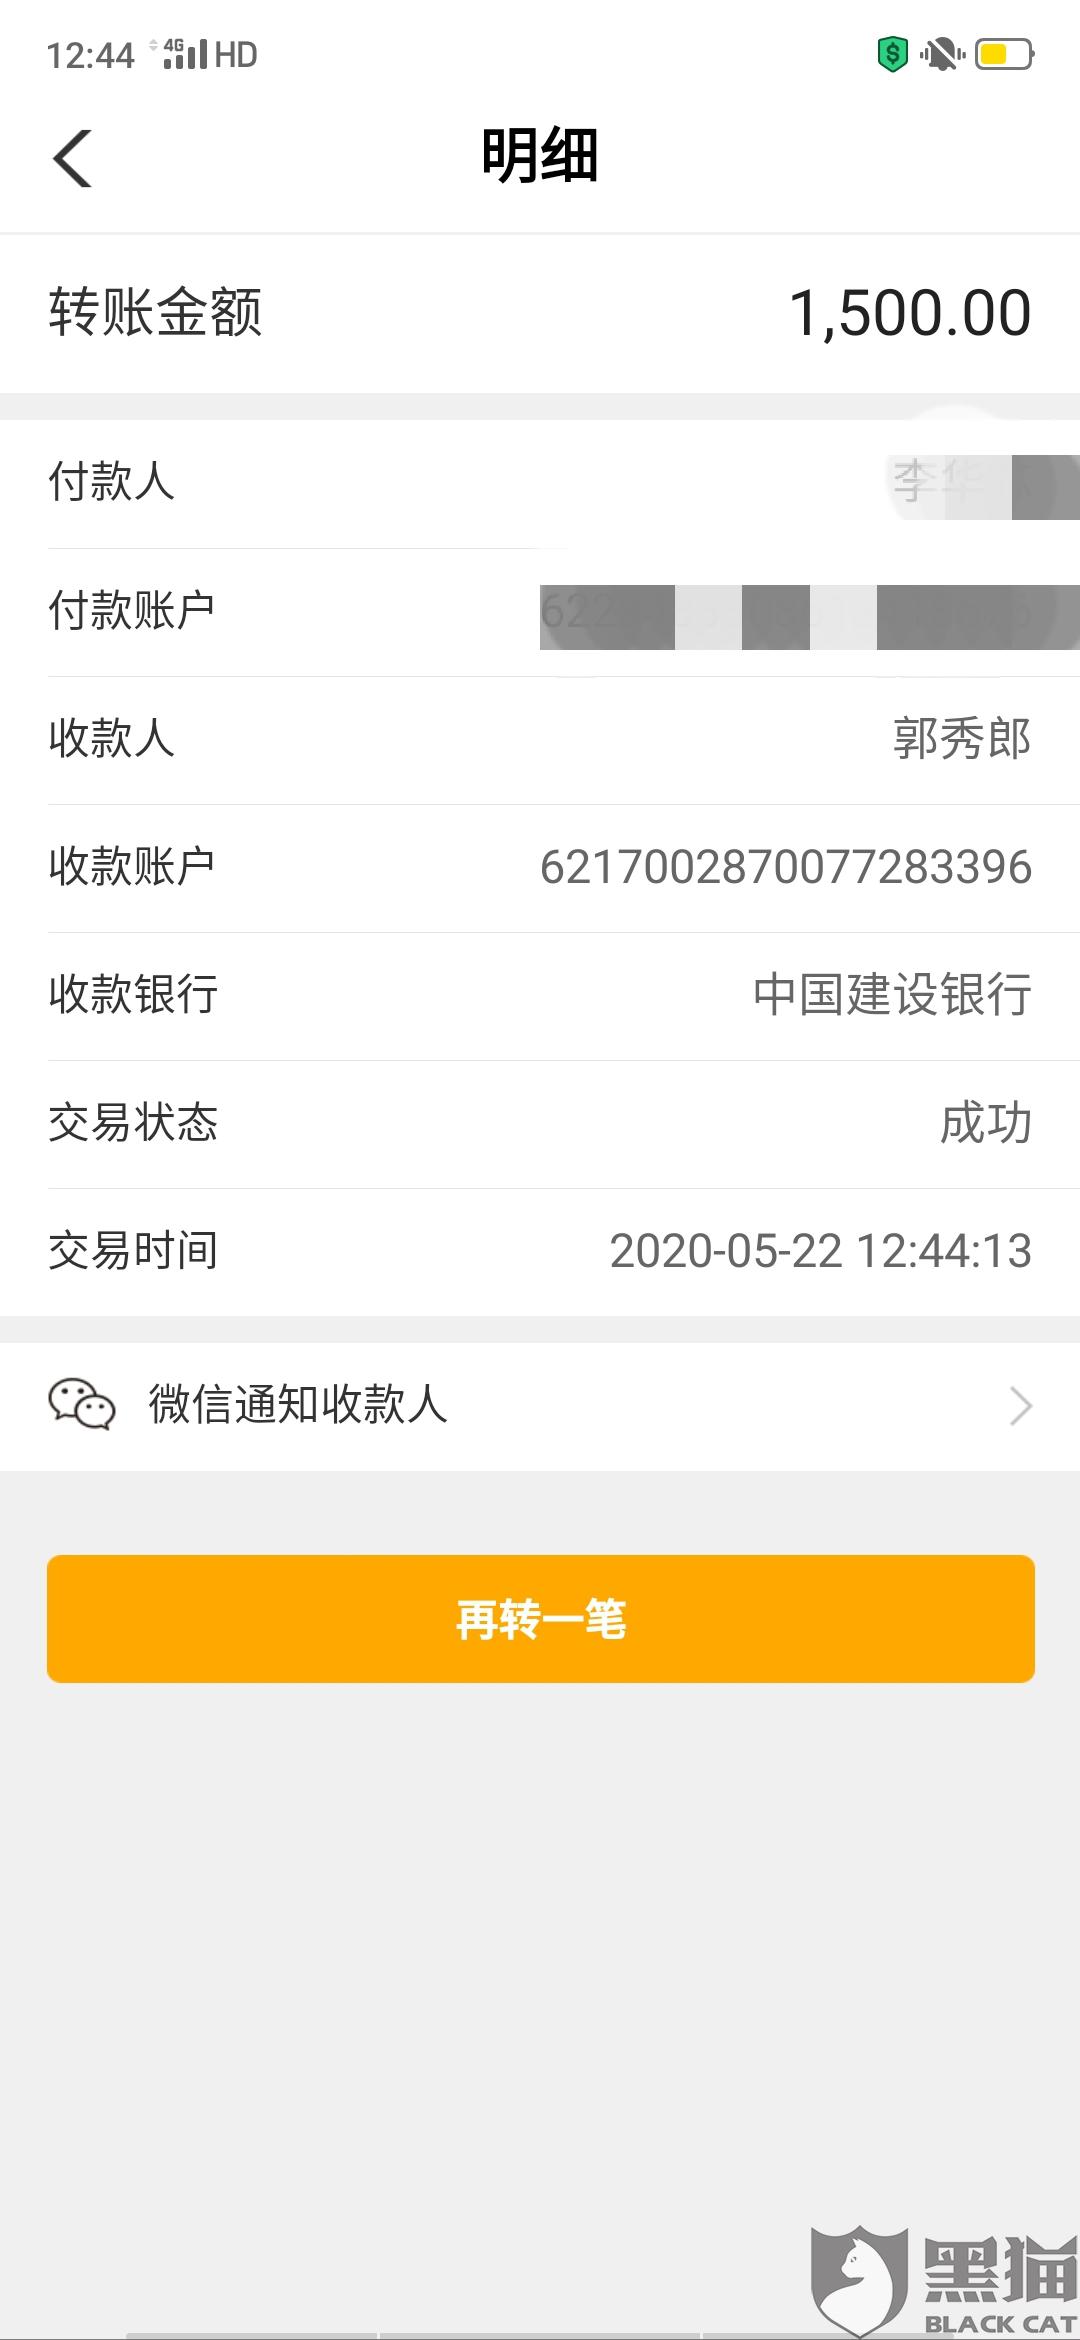 5月22日通过手机银行转账给郭秀郎1500元,并在app上传了还款转账凭证